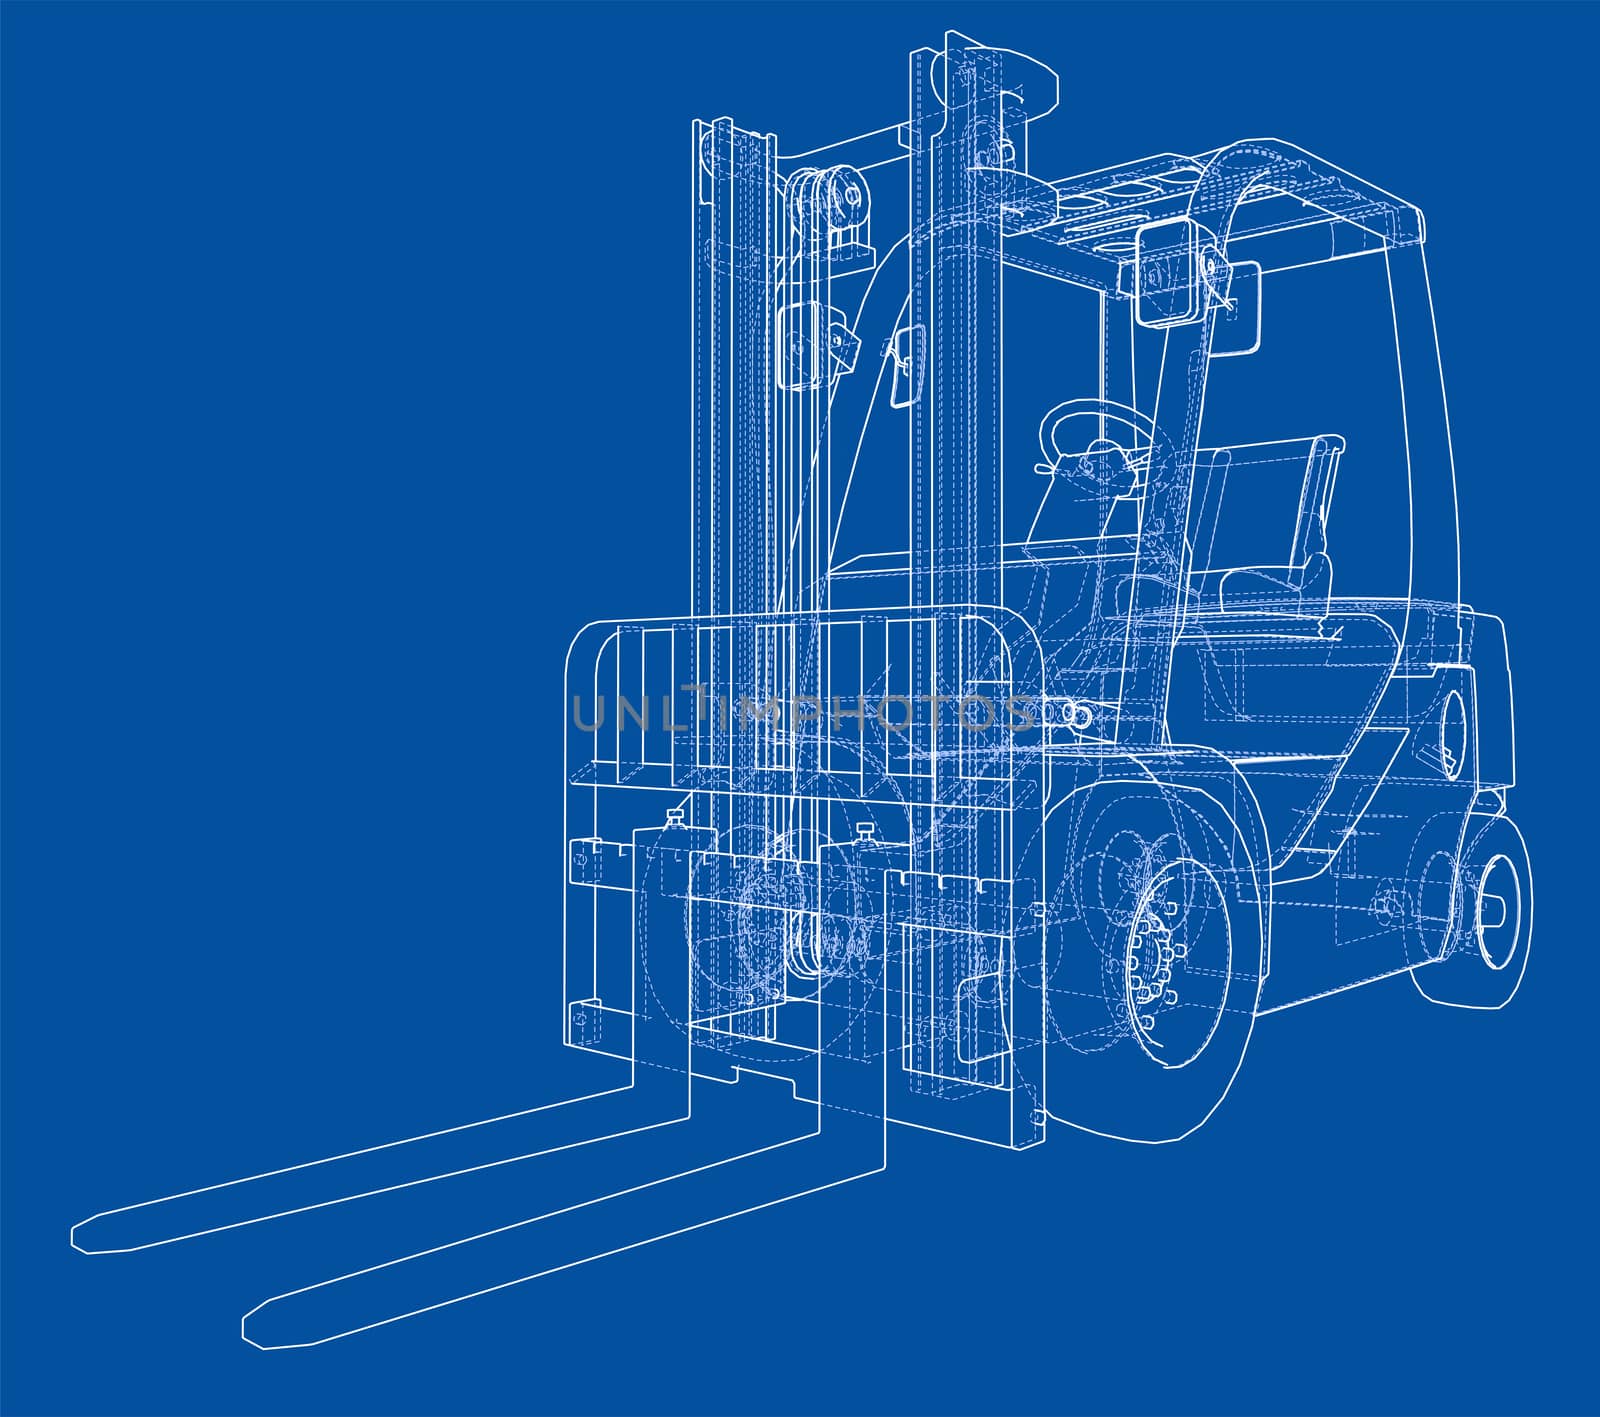 Forklift concept. 3d illustration. Wire-frame style. Blue background